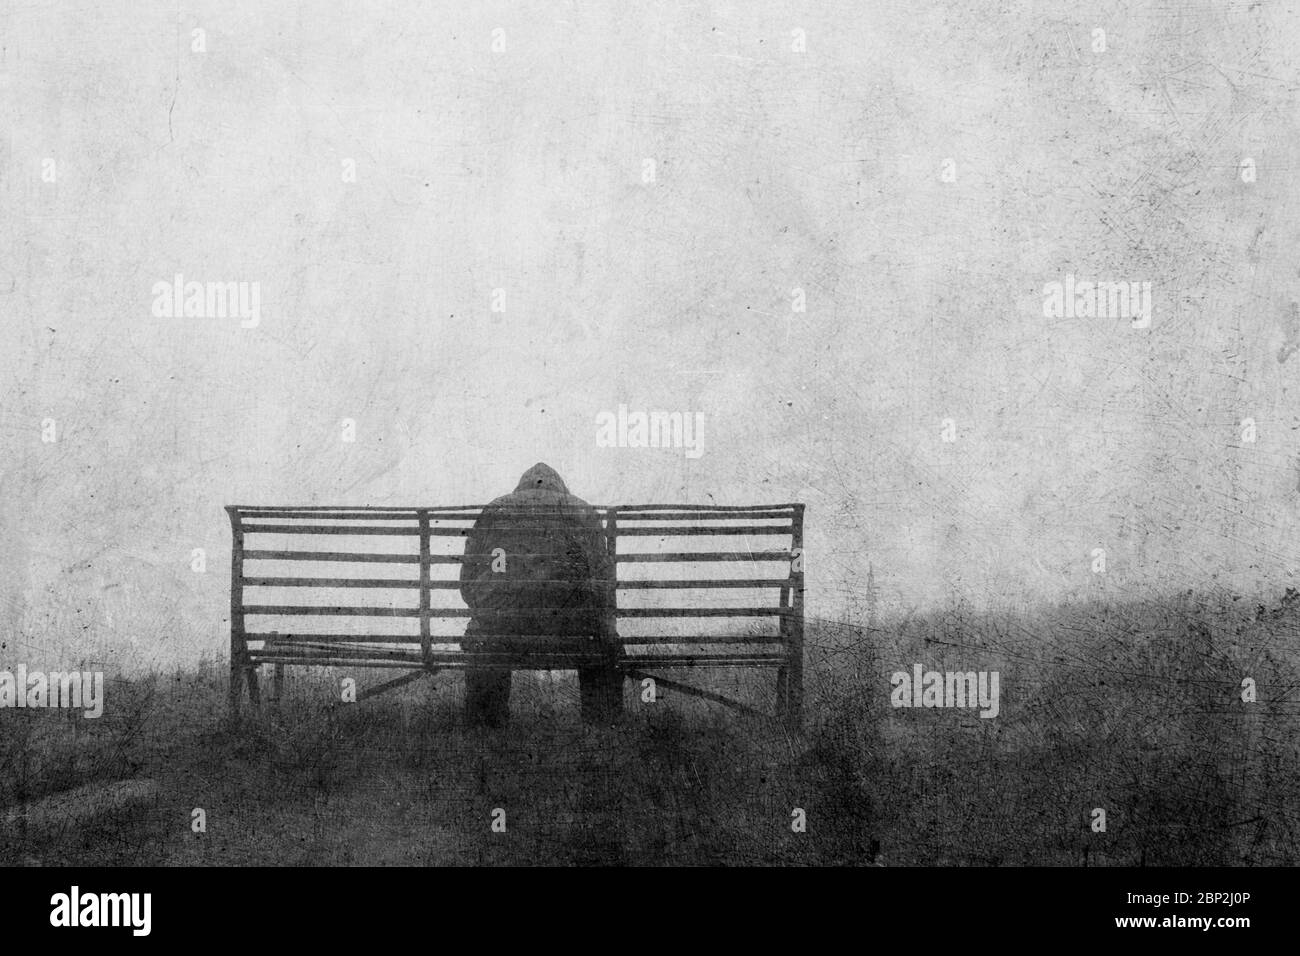 Un concept de santé mentale de figure mystérieuse de retour à la caméra, assis sur un banc seul. Avec une retouche texturée. Banque D'Images